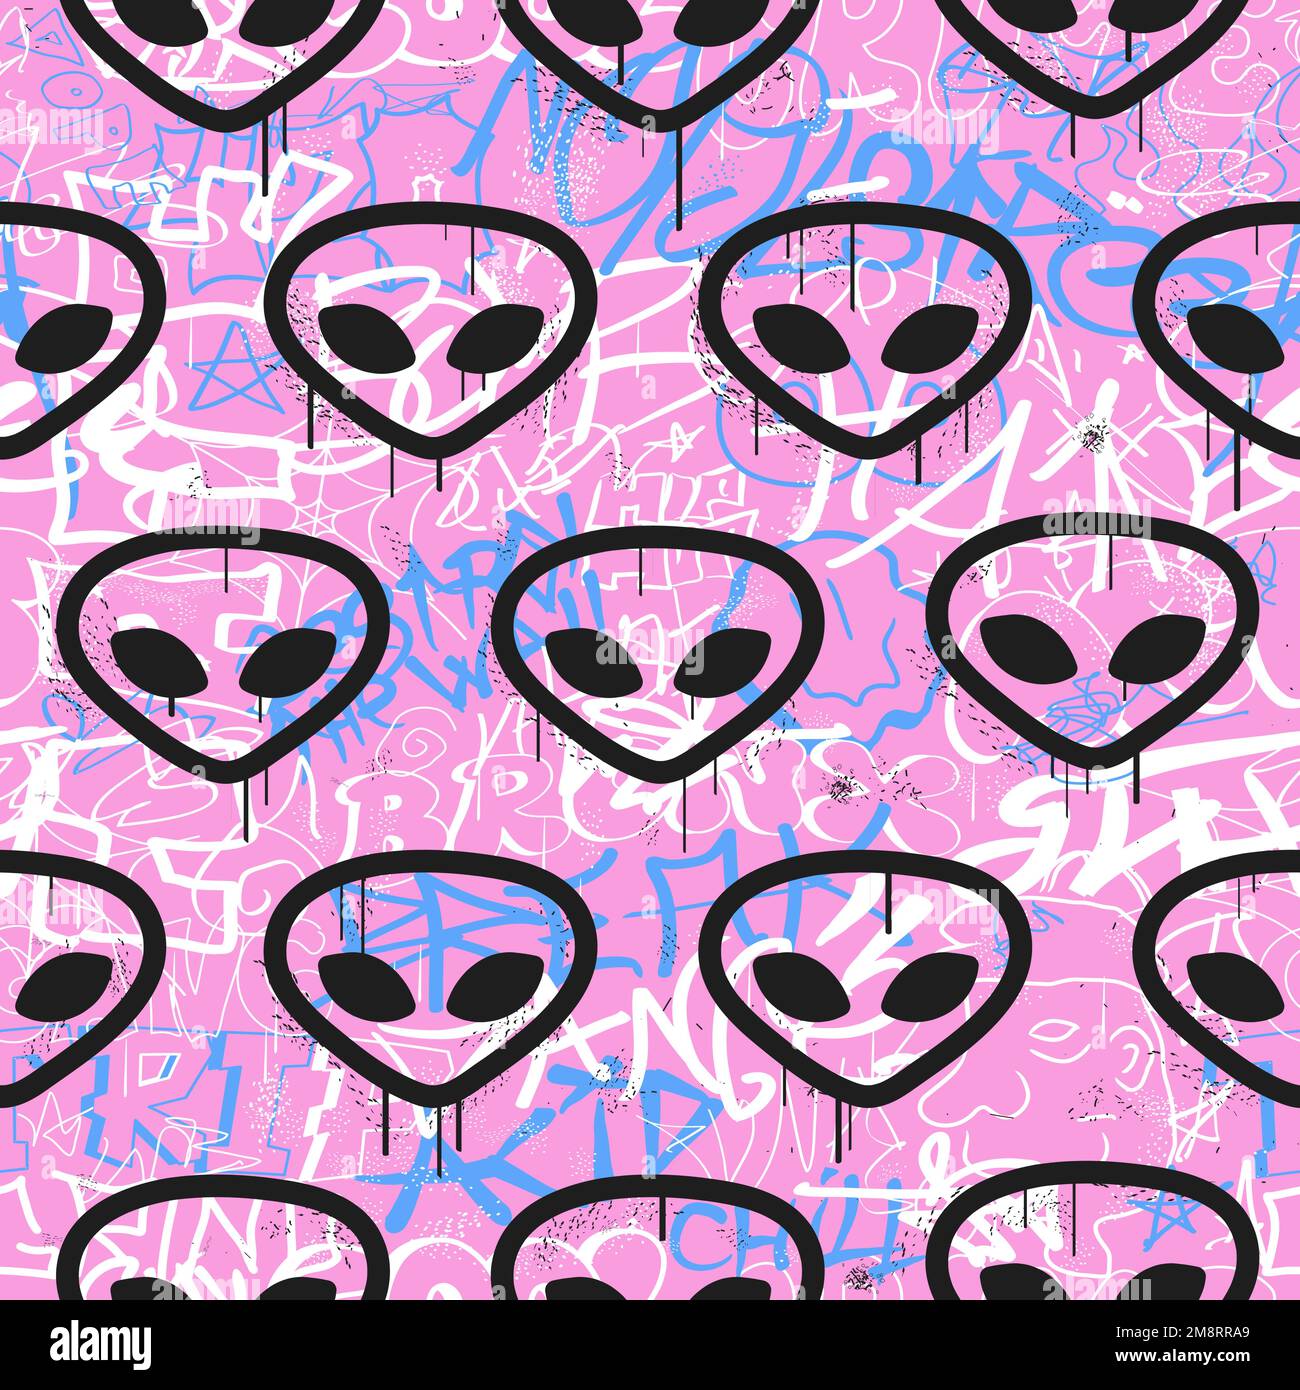 Alien Girl!  Iphone wallpaper tumblr hipster, Iphone wallpaper, Tumblr  iphone wallpaper